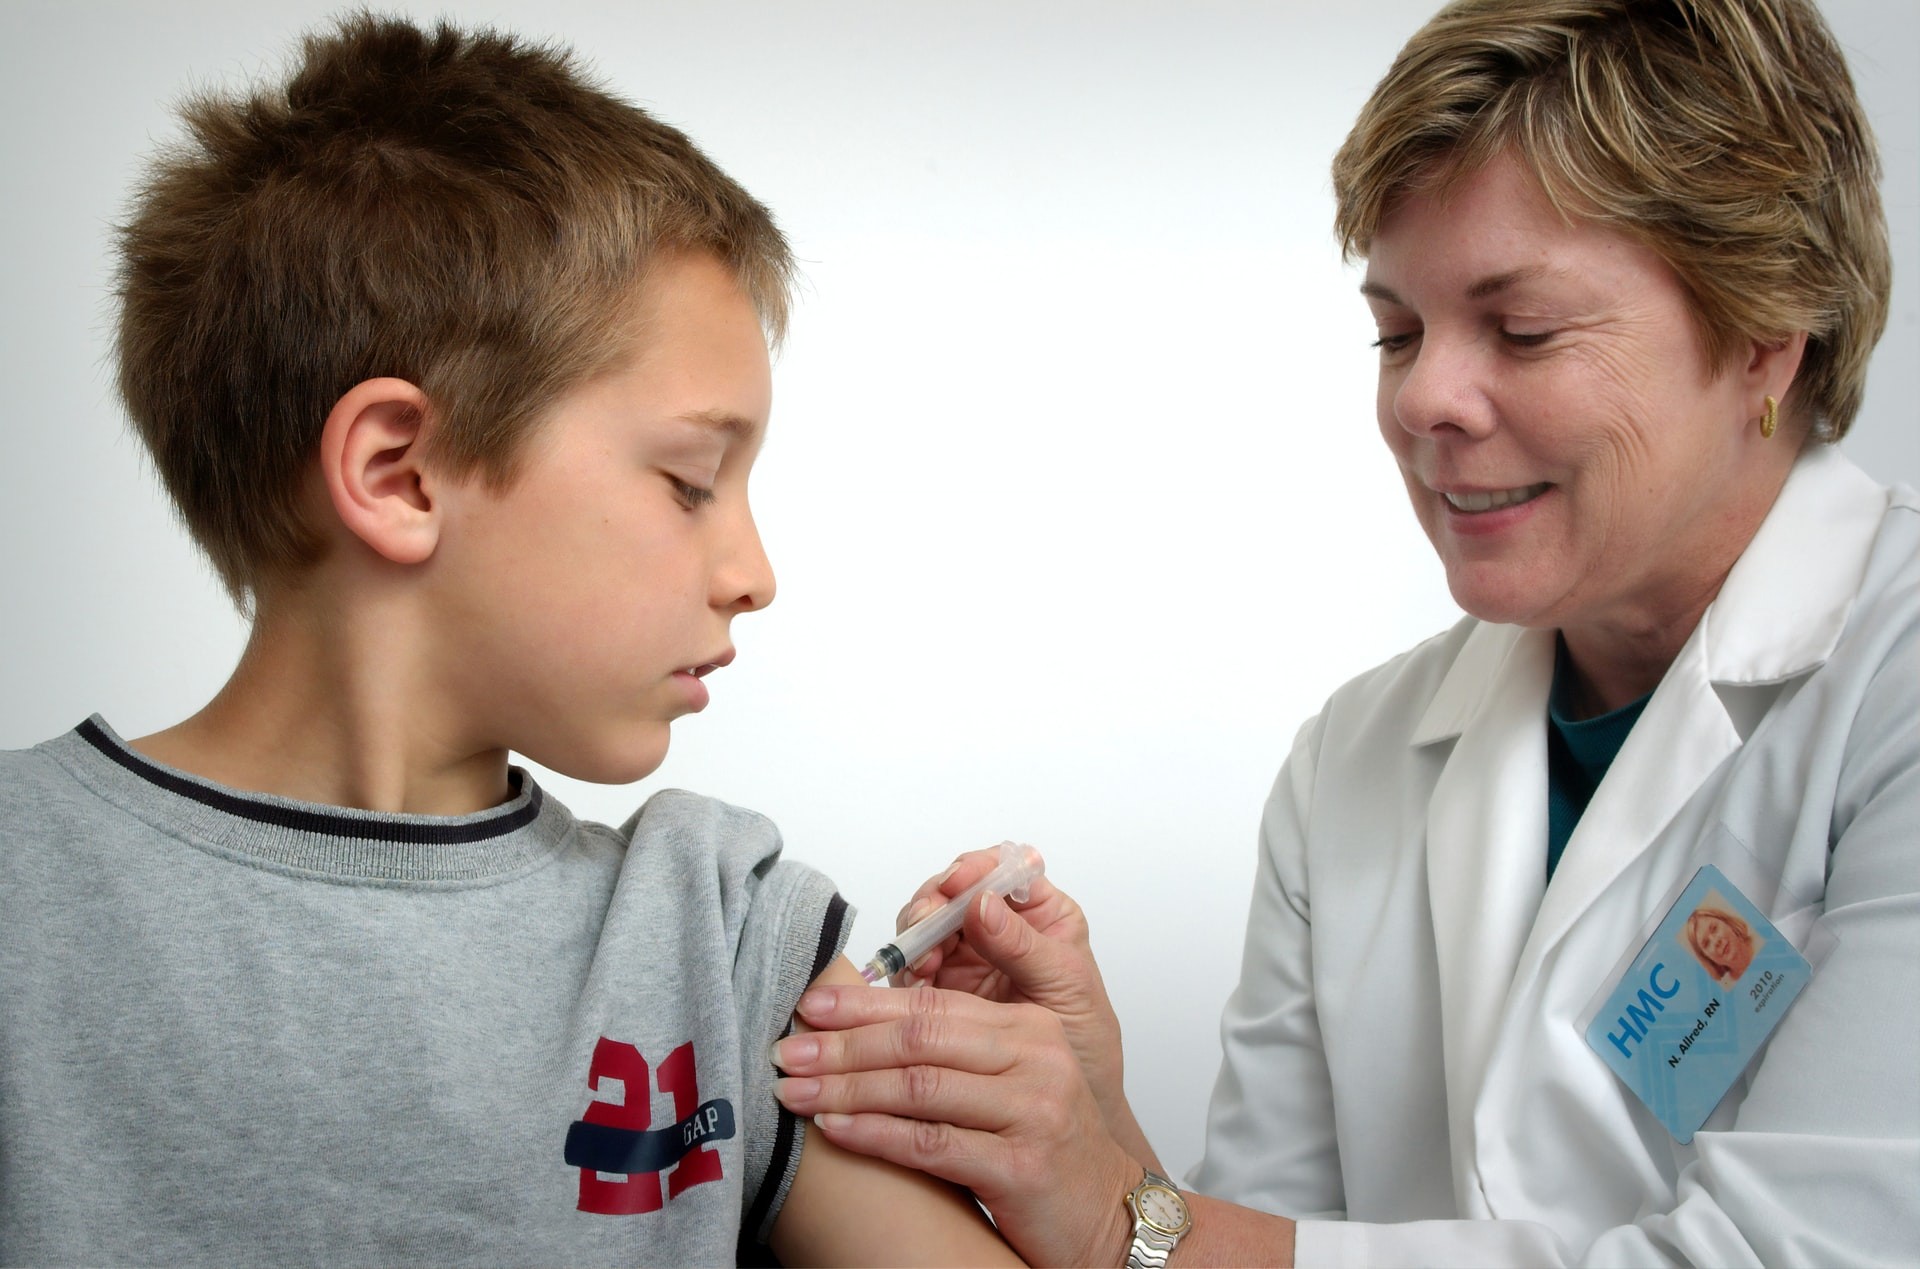 Apenas 27% das crianças entre 5 a 11 anos foram vacinadas contra a covid nos Estados Unidos; entre os adolescentes a taxa de vacinação é de 57% (Foto: Unsplash)